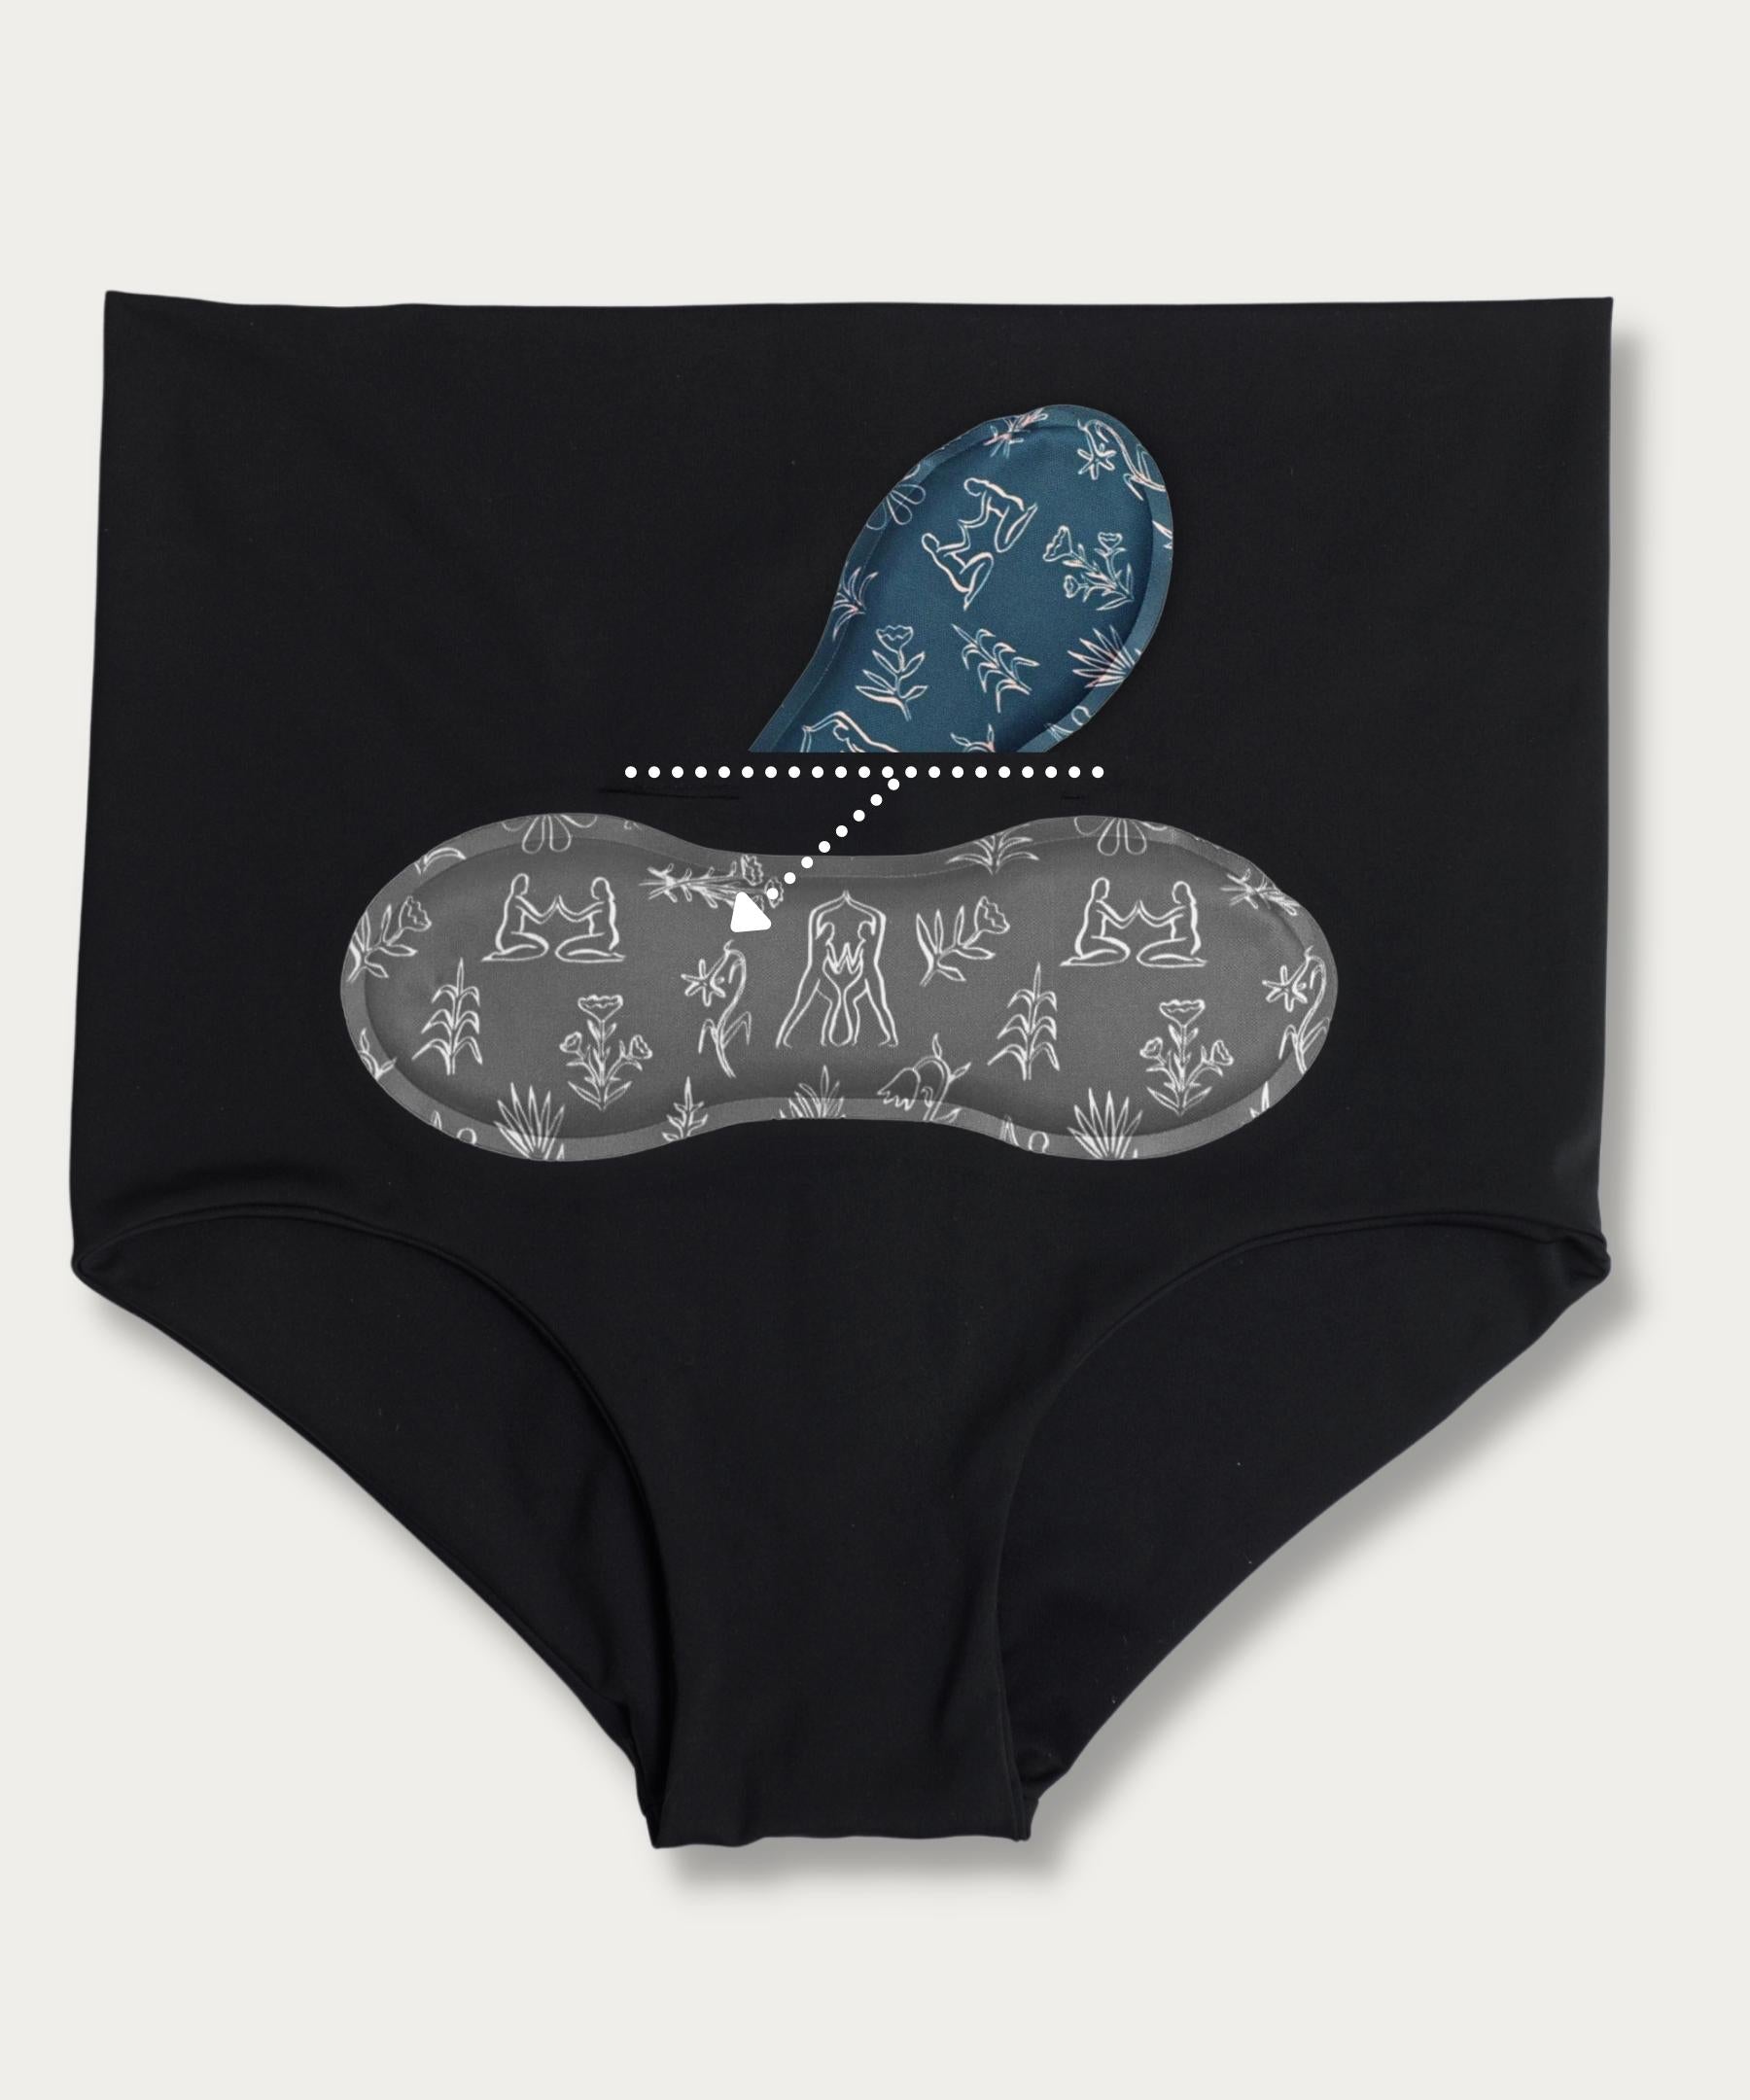 FYCONE Postpartum Underwear for Women - C-Section High Waist